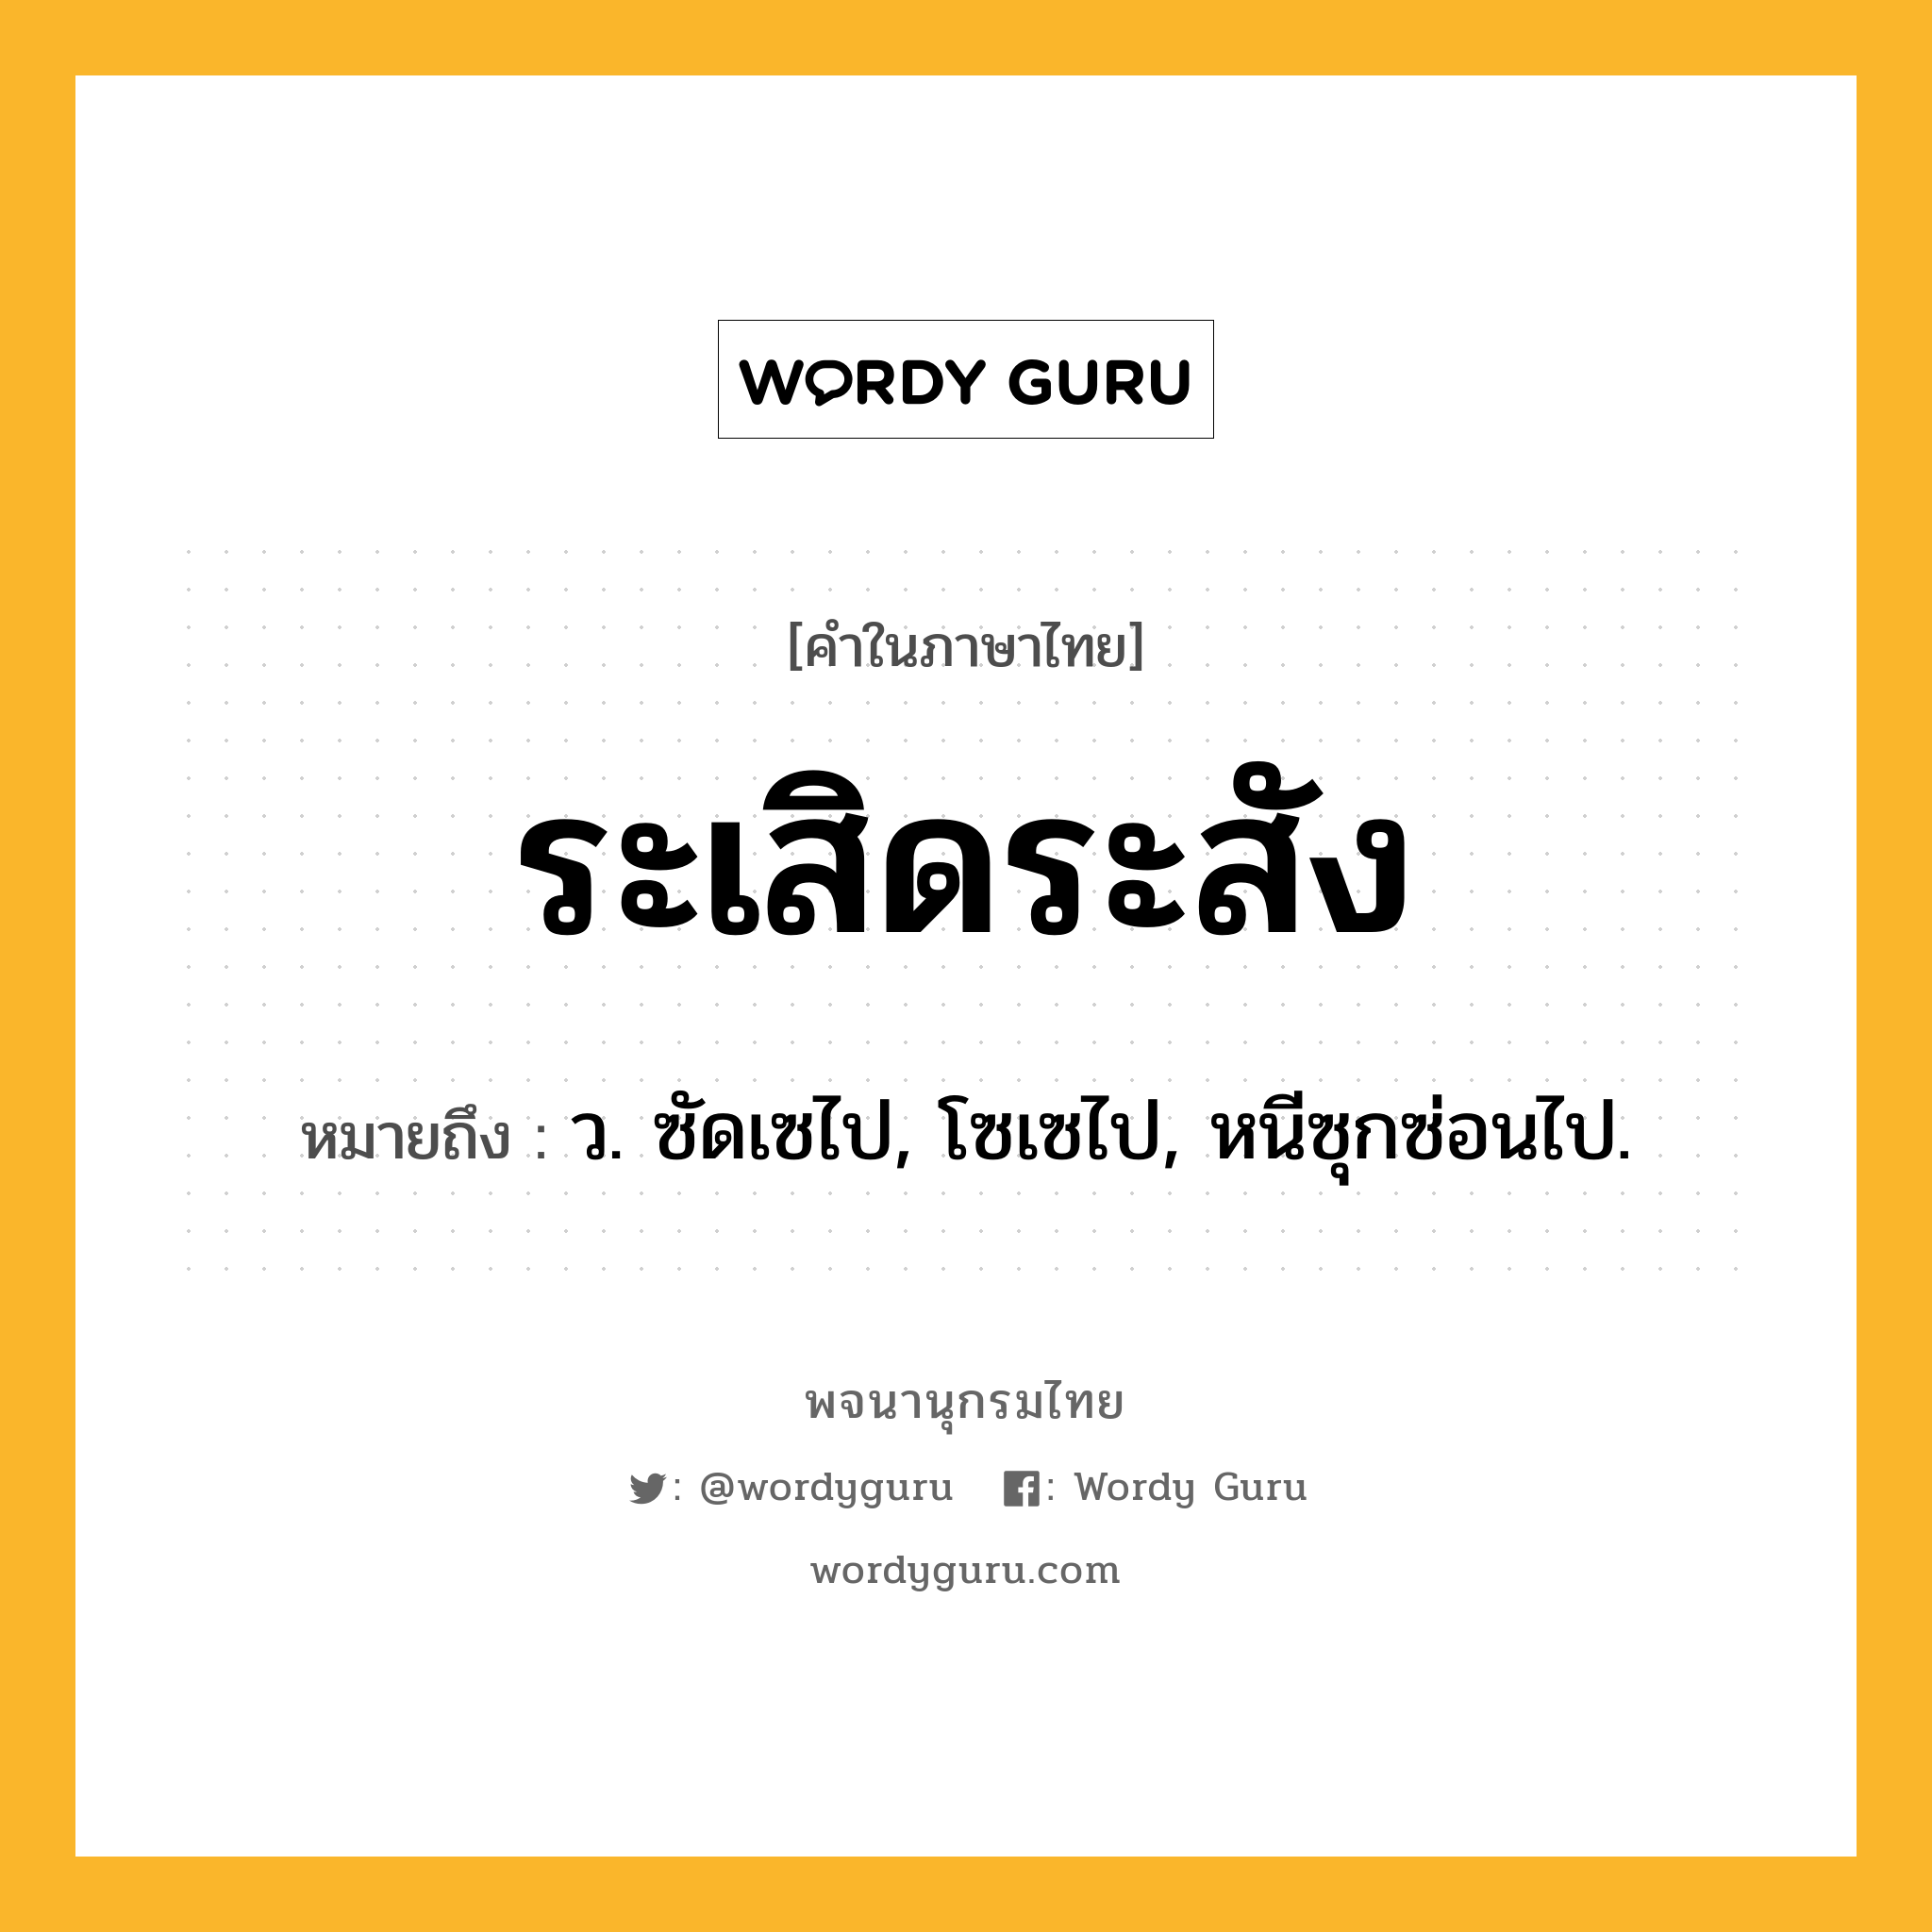 ระเสิดระสัง ความหมาย หมายถึงอะไร?, คำในภาษาไทย ระเสิดระสัง หมายถึง ว. ซัดเซไป, โซเซไป, หนีซุกซ่อนไป.